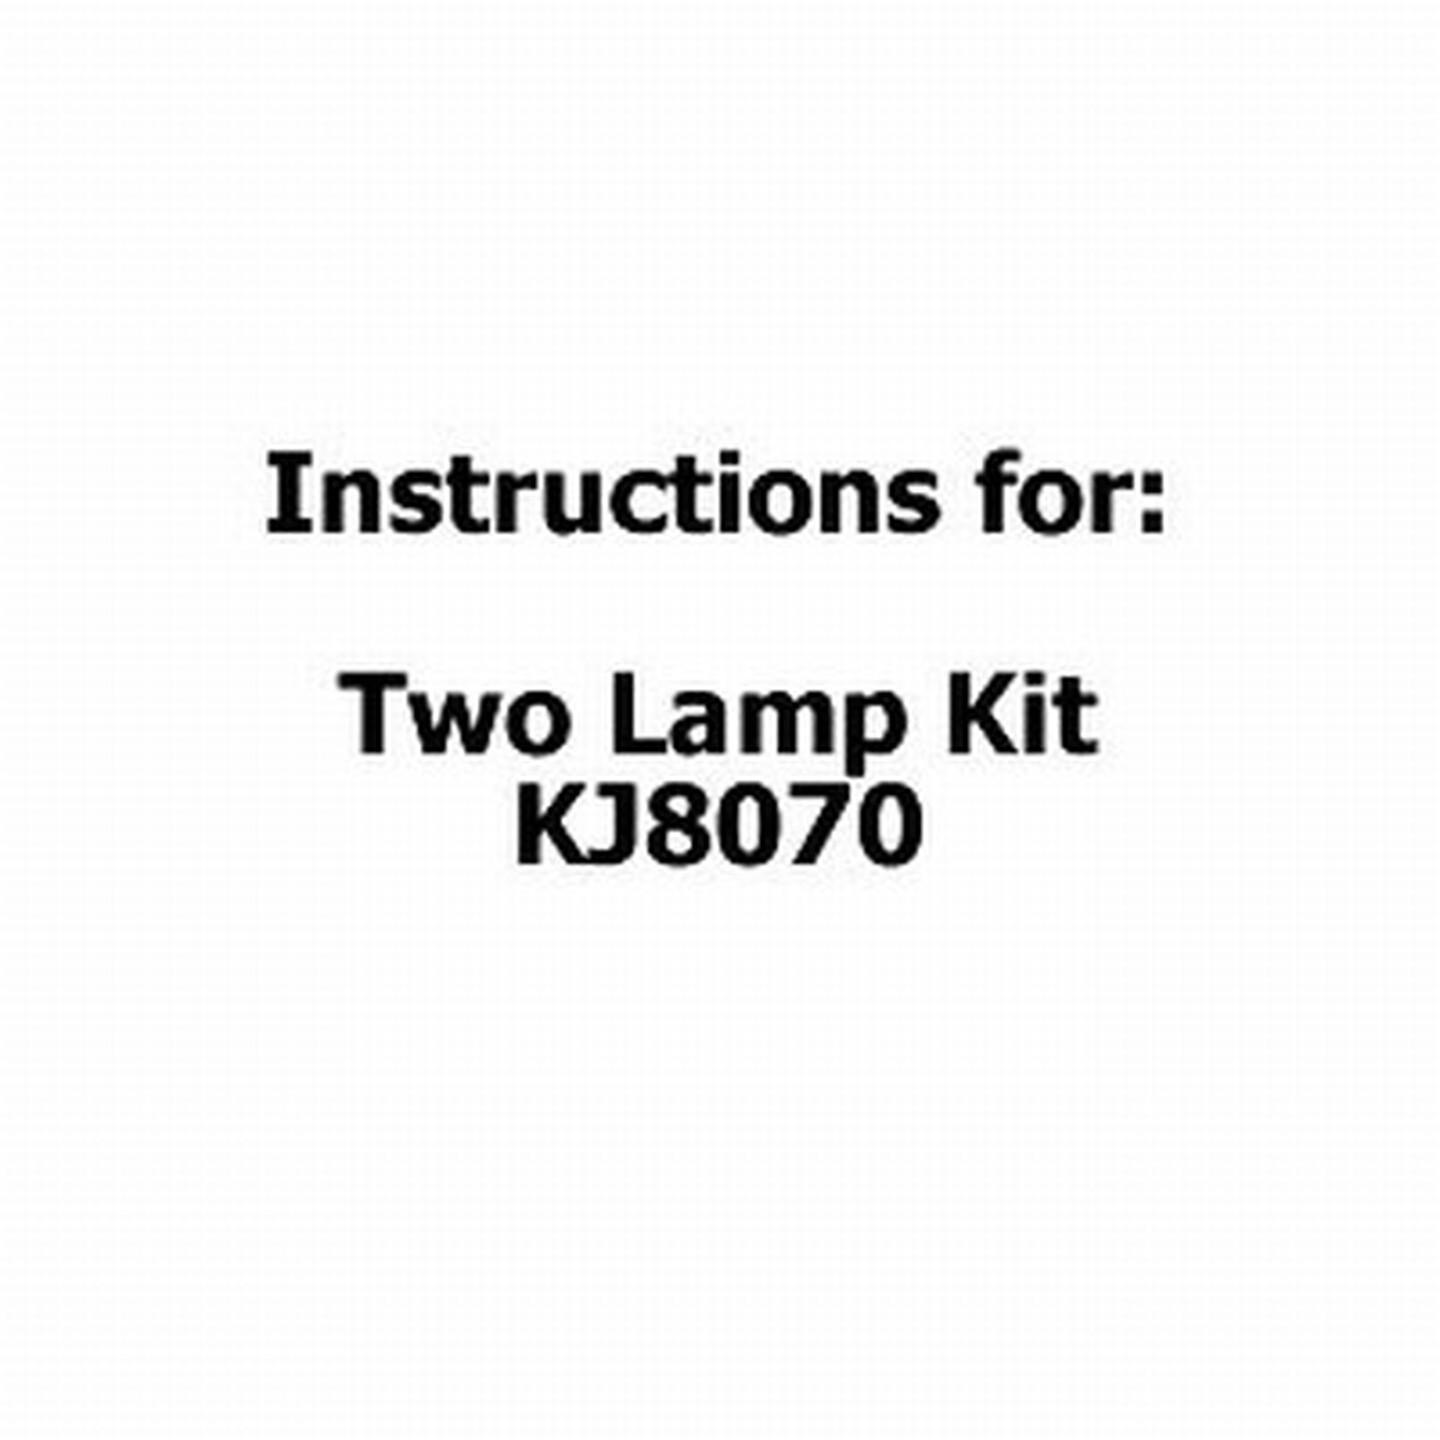 Instructions For Two Lamp Kit KJ8070